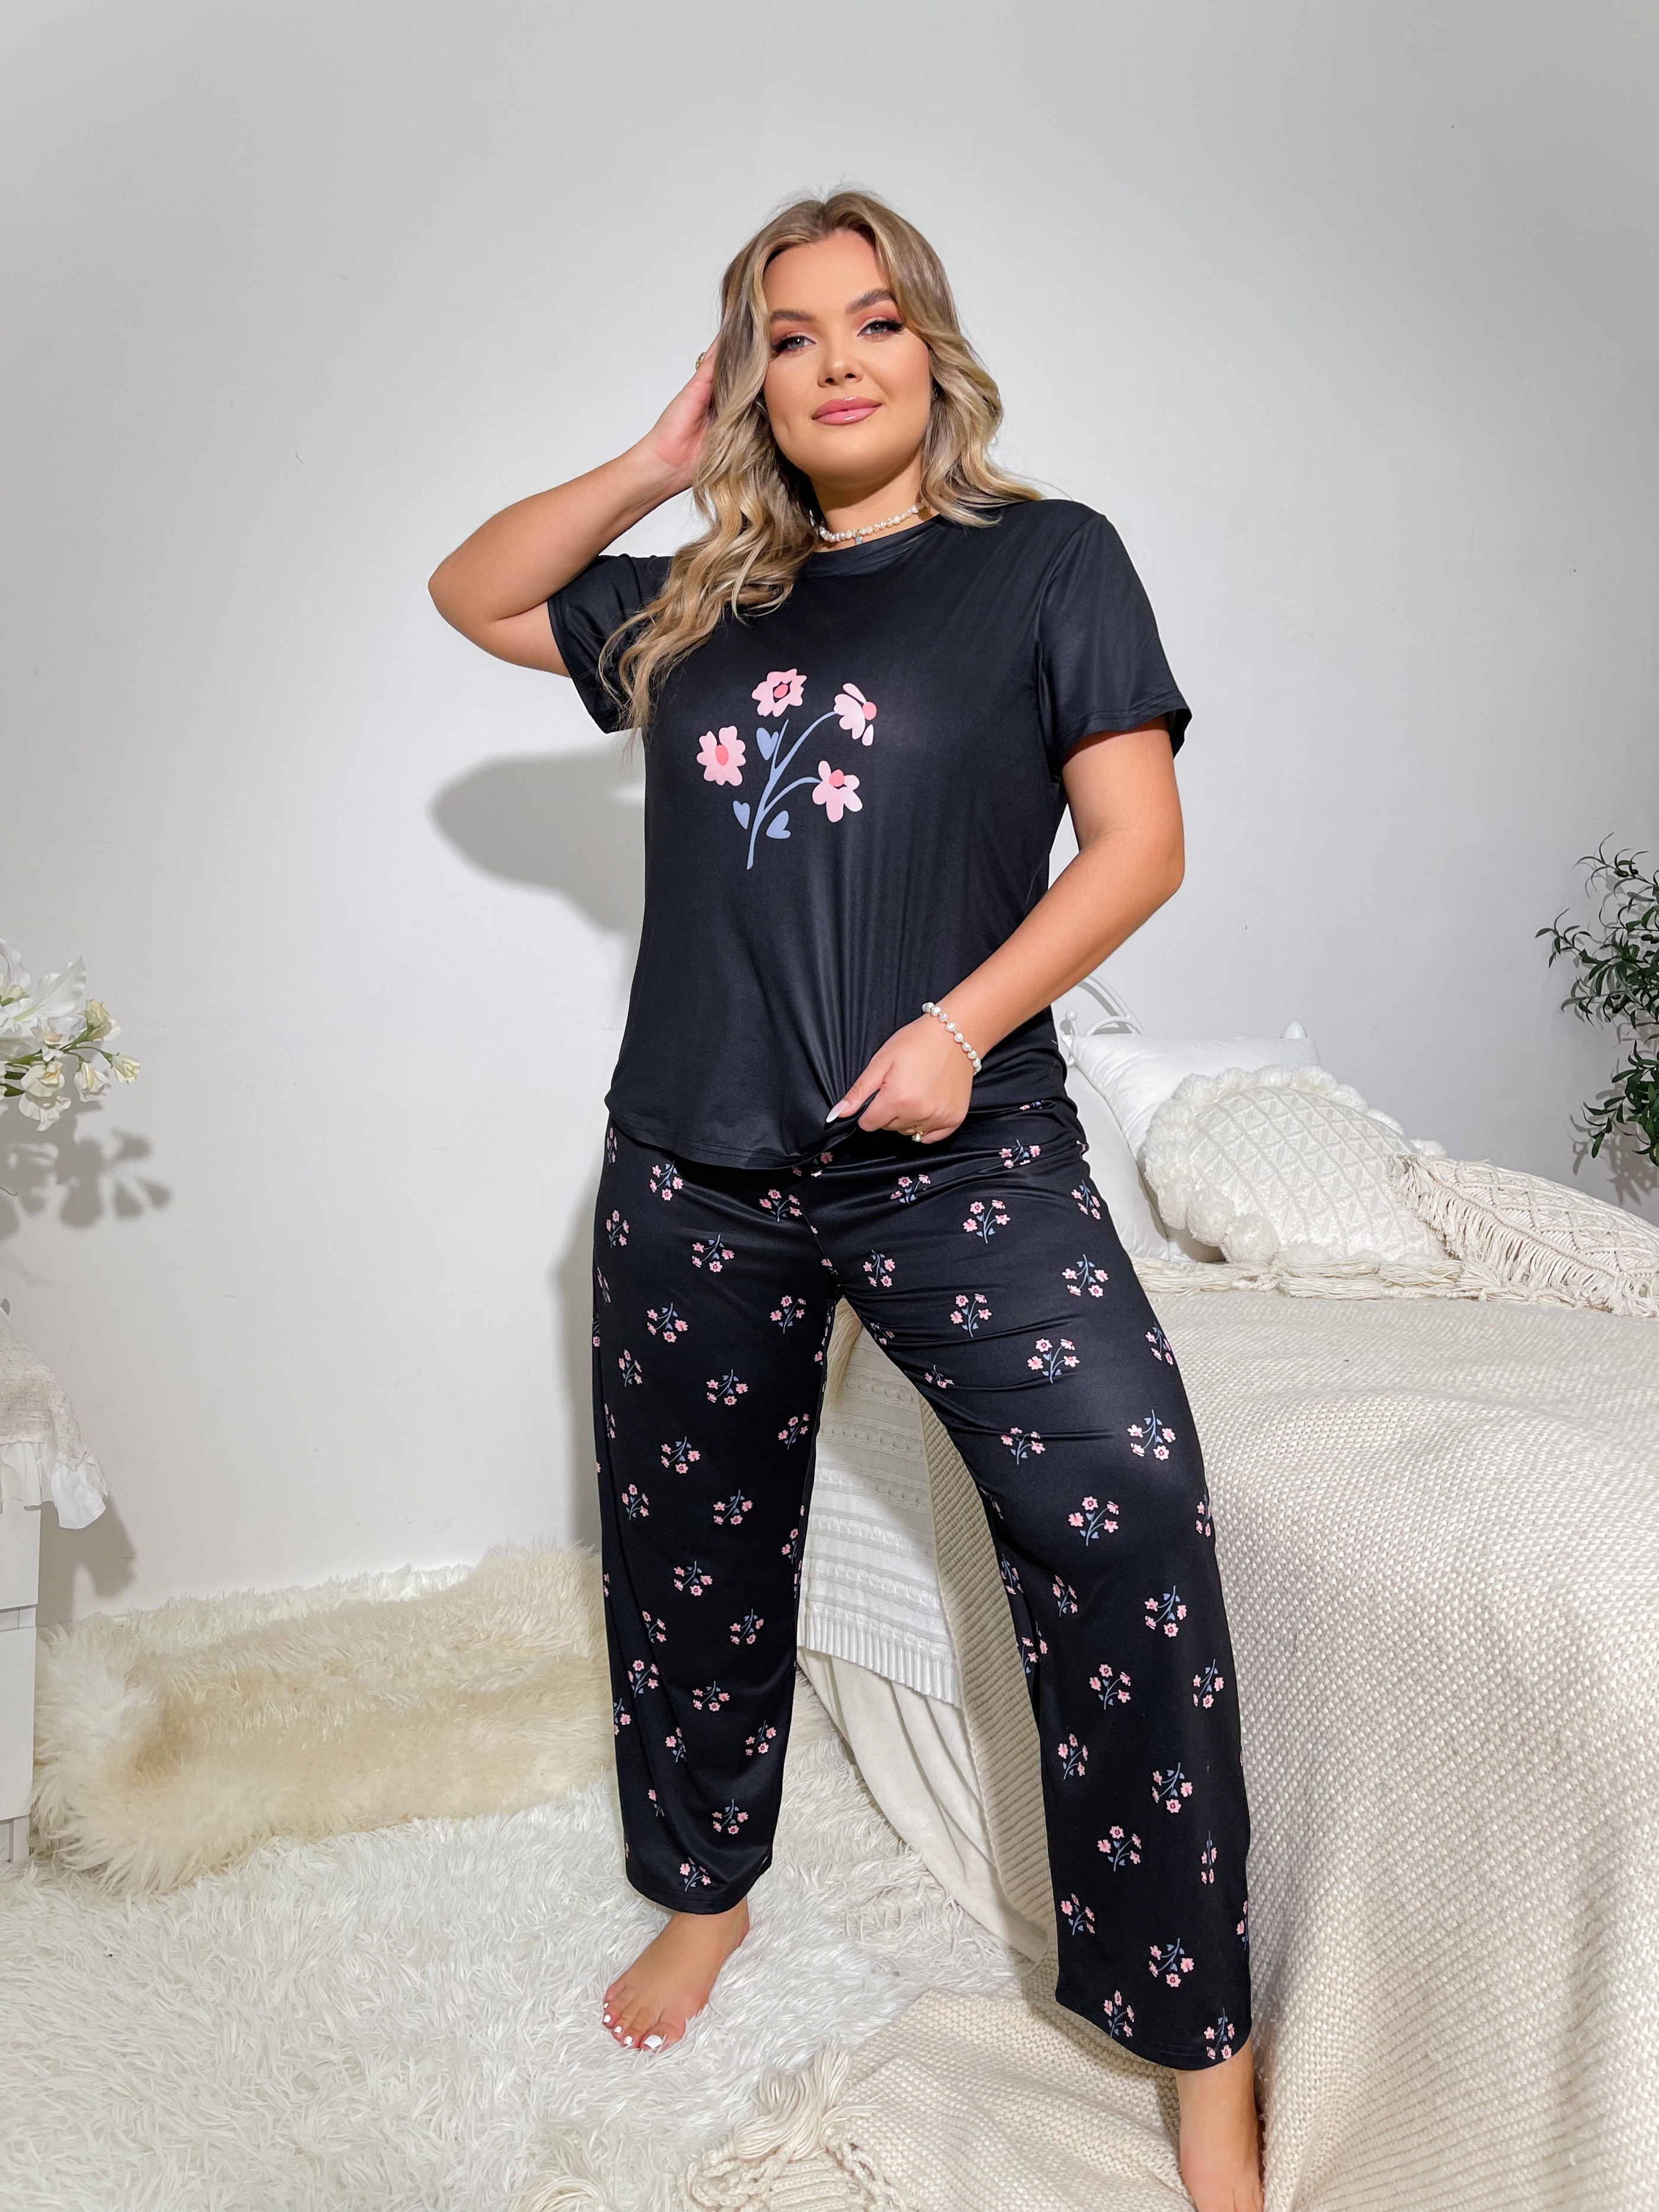 Womens Silk Satin Pajamas Pyjamas Set Long Sleeve Sleepwear Pijama Pajamas  Suit Female Sleep Two Piece Set Loungewear Plus Size